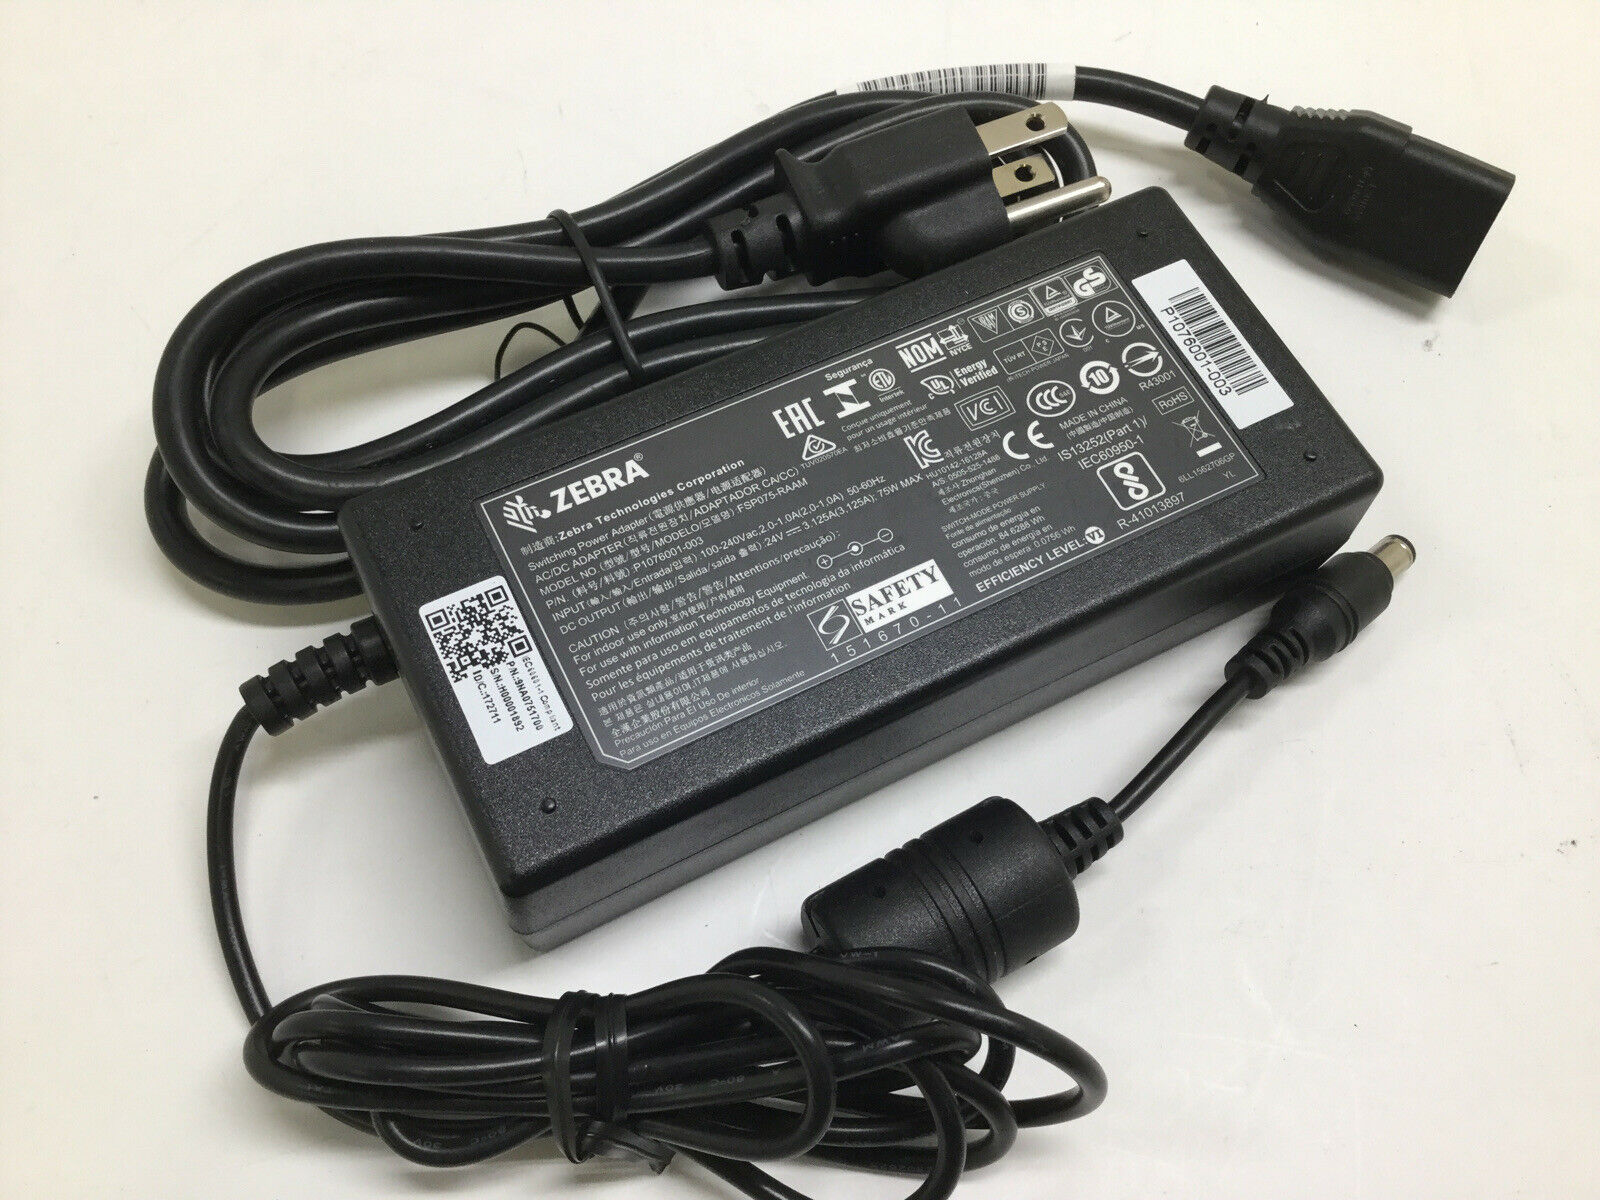 NEW ZEBRA FSP075-RAAM P1076001-003 AC Adapter Power Supply 24V 3.125A 75W Compatible Brand: ZEBRA Color: Black Maximum - Click Image to Close